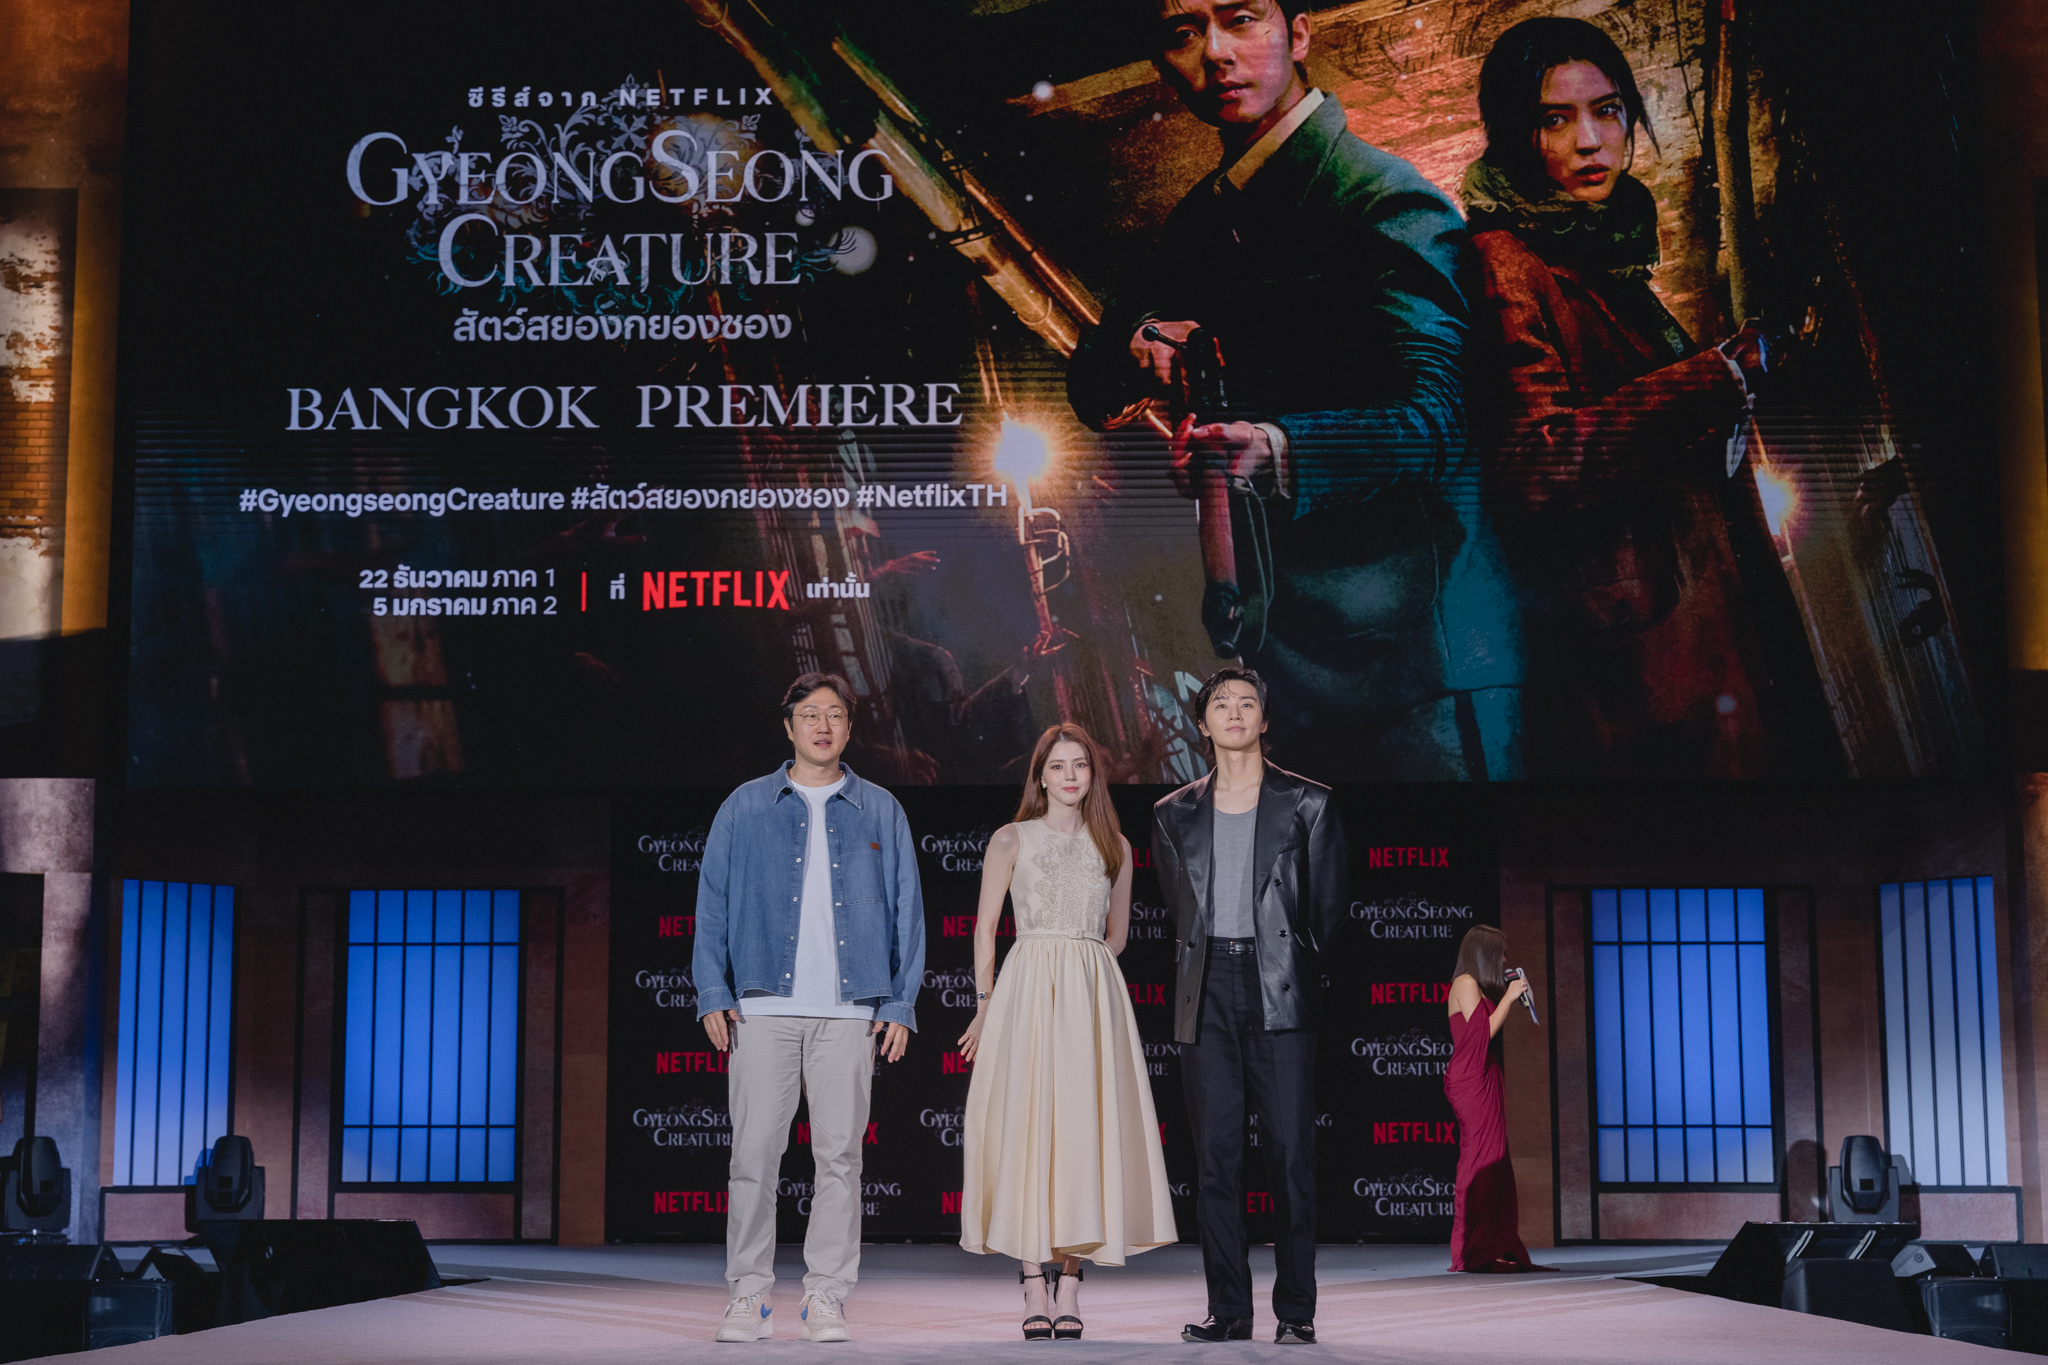 Netflix พาพัคซอจุน-ฮันโซฮีเยือนไทย เปิดตัวซีรีส์ สัตว์สยองกยองซอง (Gyeongseong Creature) พร้อมเนรมิตฤดูใบไม้ผลิปี 1945 ให้บานสะพรั่งในงาน “Gyeongseong Creature Bangkok Premiere”